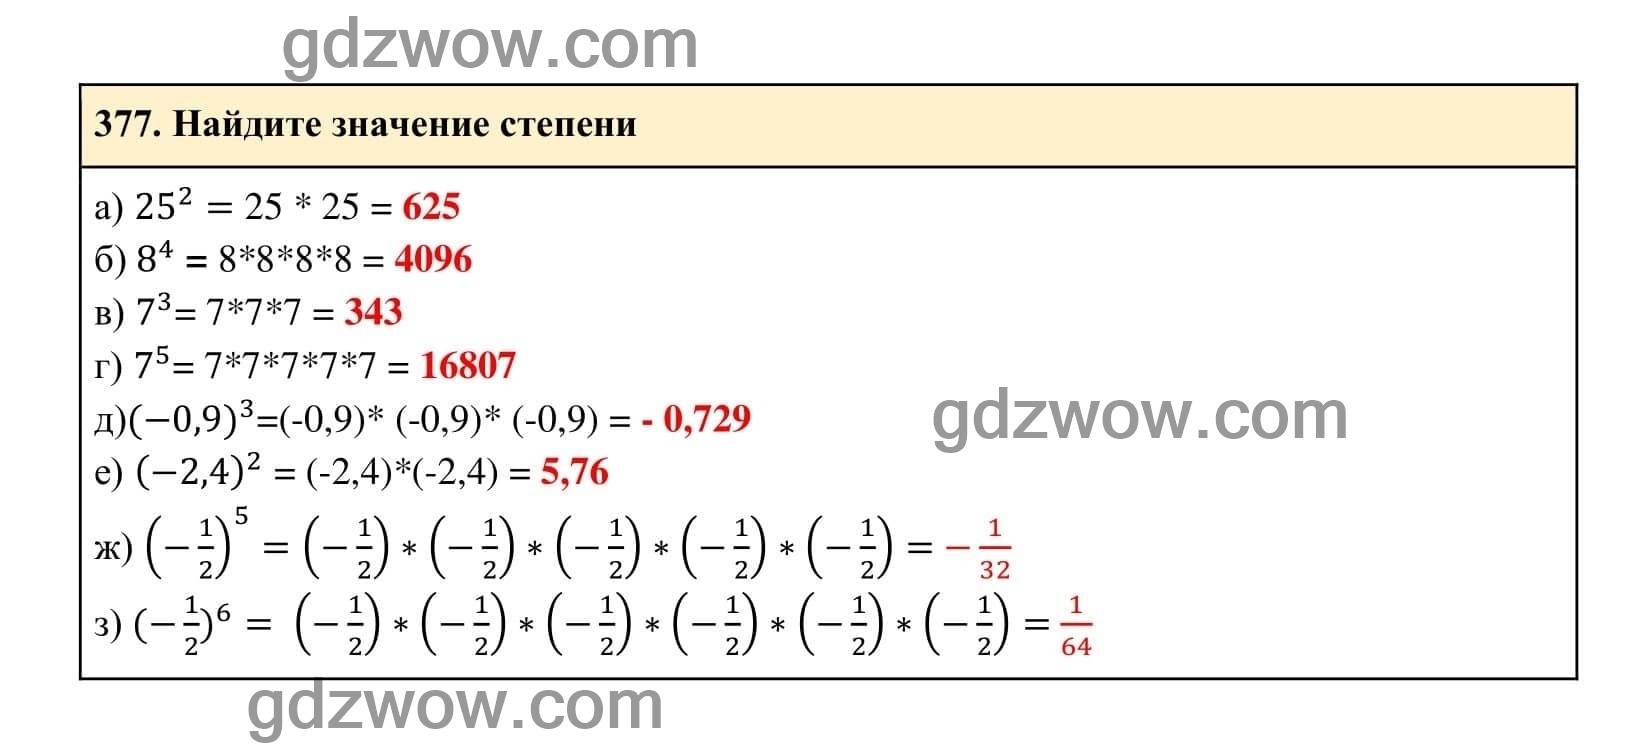 Упражнение 377 - ГДЗ по Алгебре 7 класс Учебник Макарычев (решебник) - GDZwow